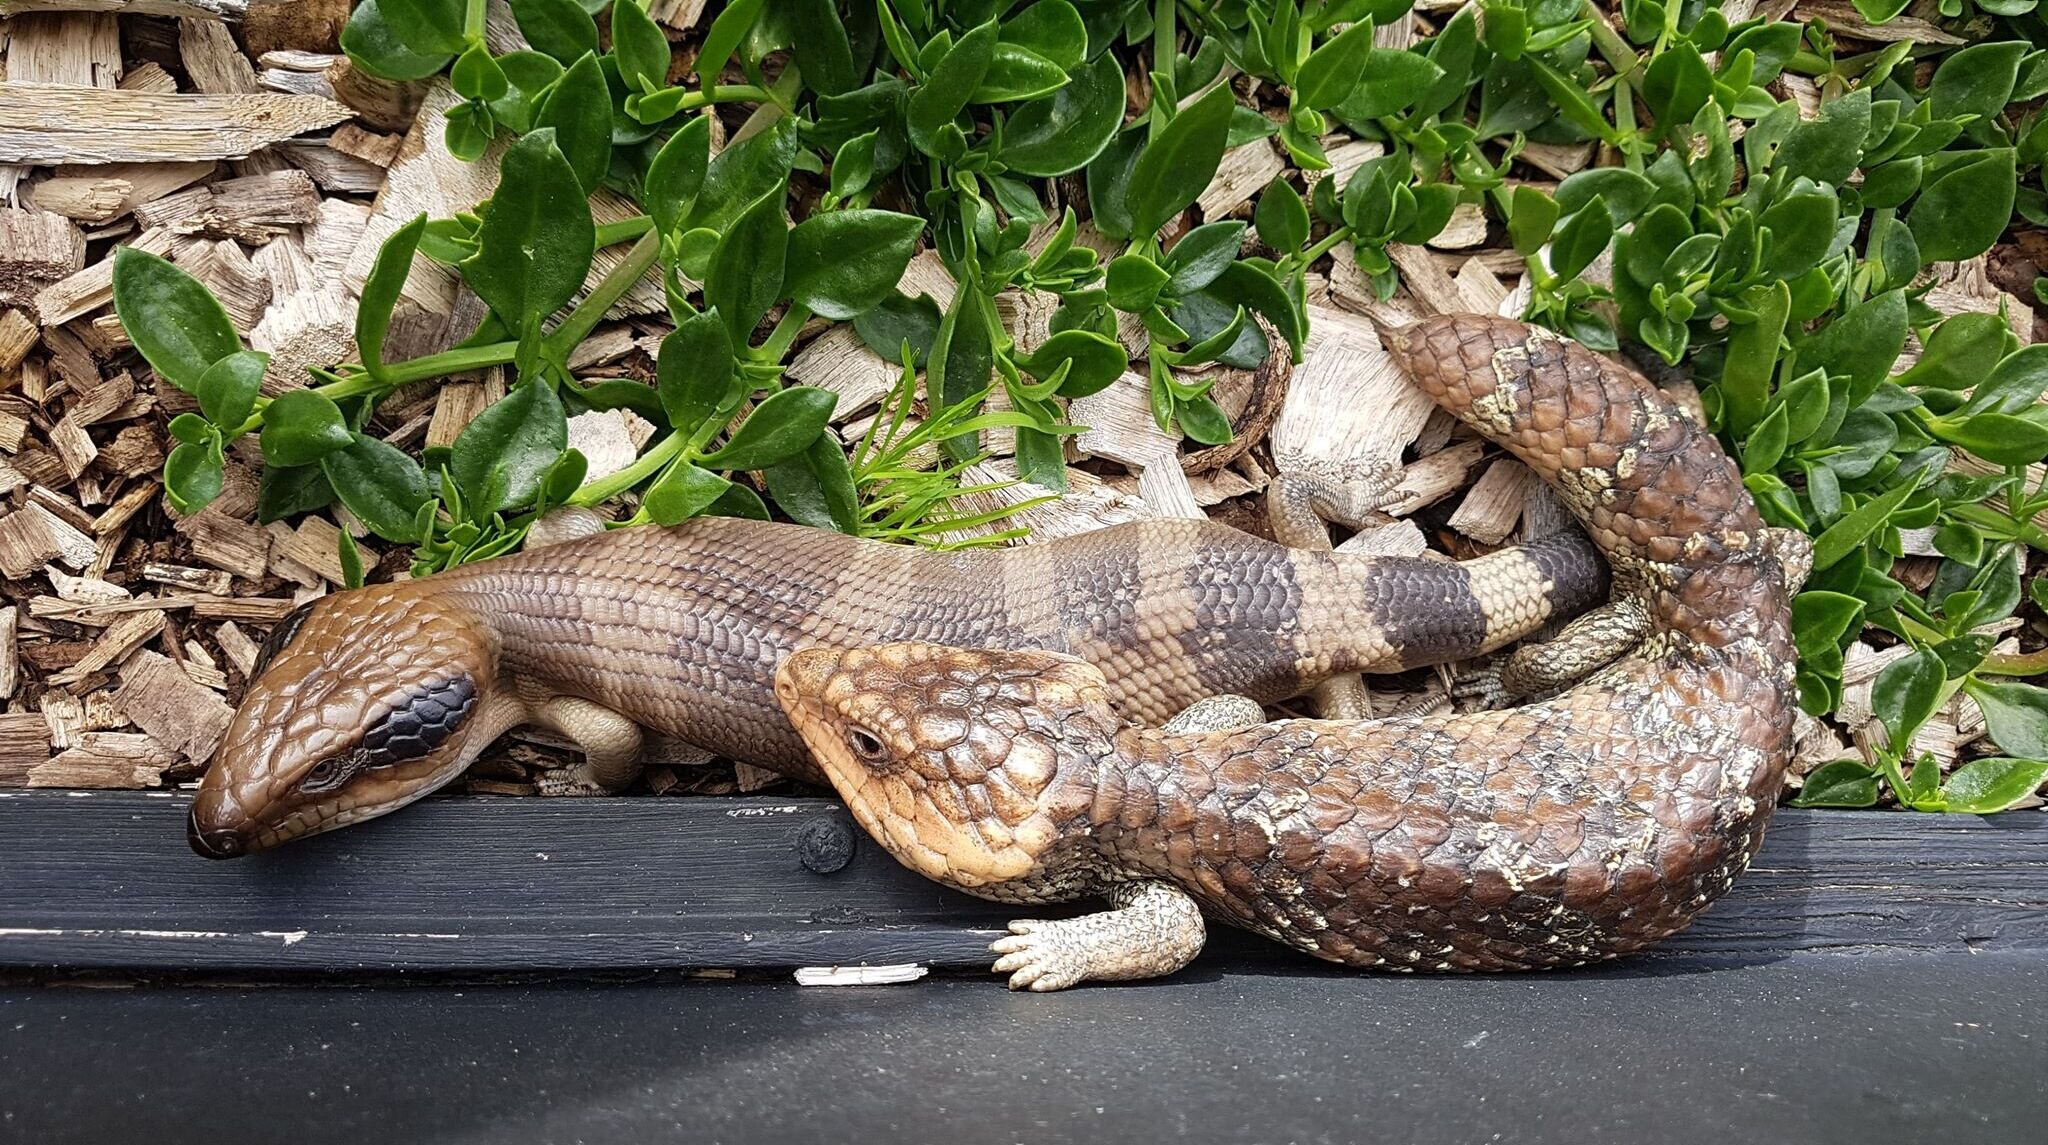 Do reptiles hibernate? — Discover Deadly